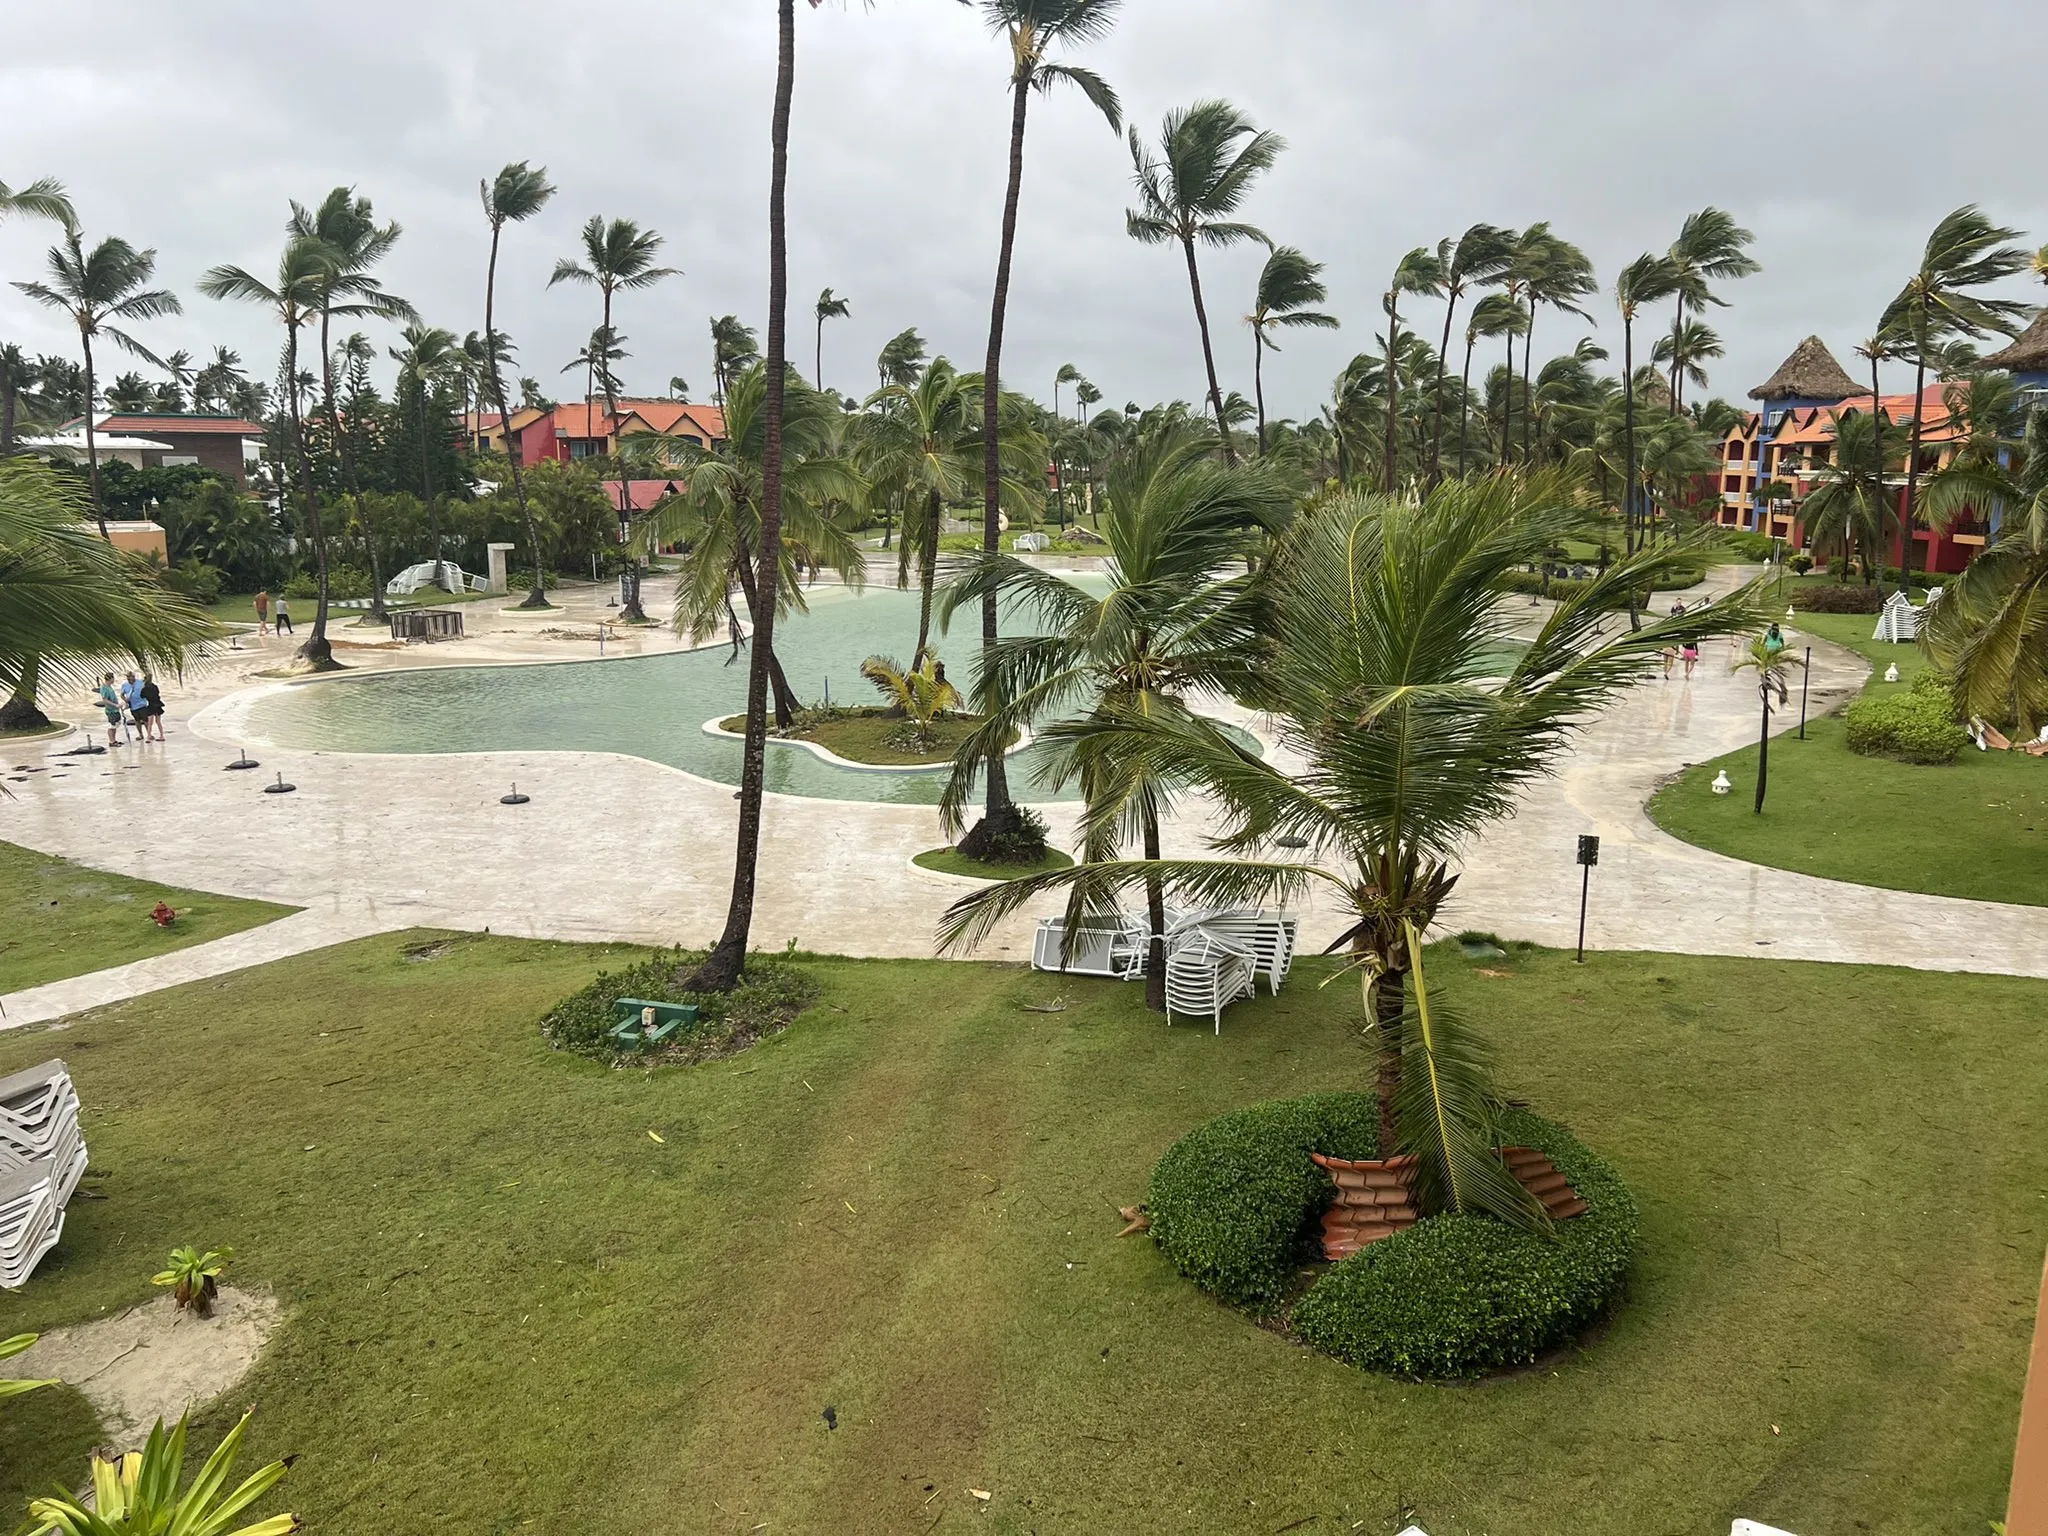 ASONAHORES: Hoteles solo con daños de jardinería por huracán